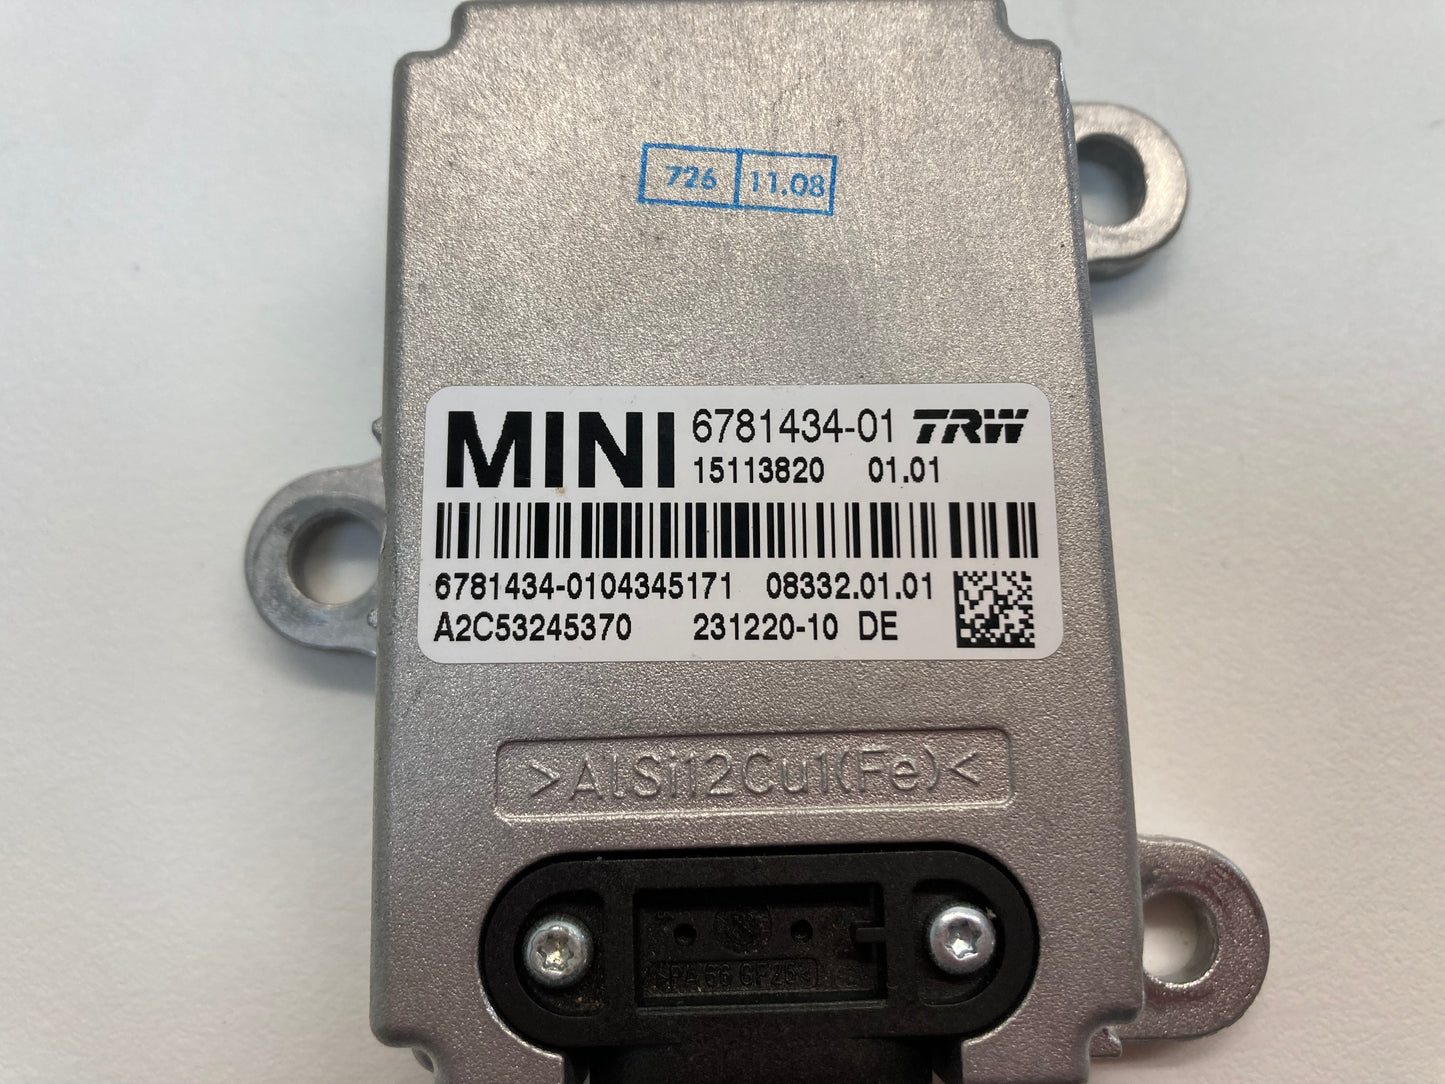 Mini Cooper Speed Control YAW Rate Sensor 34526781434 07-10 R55 R56 R57